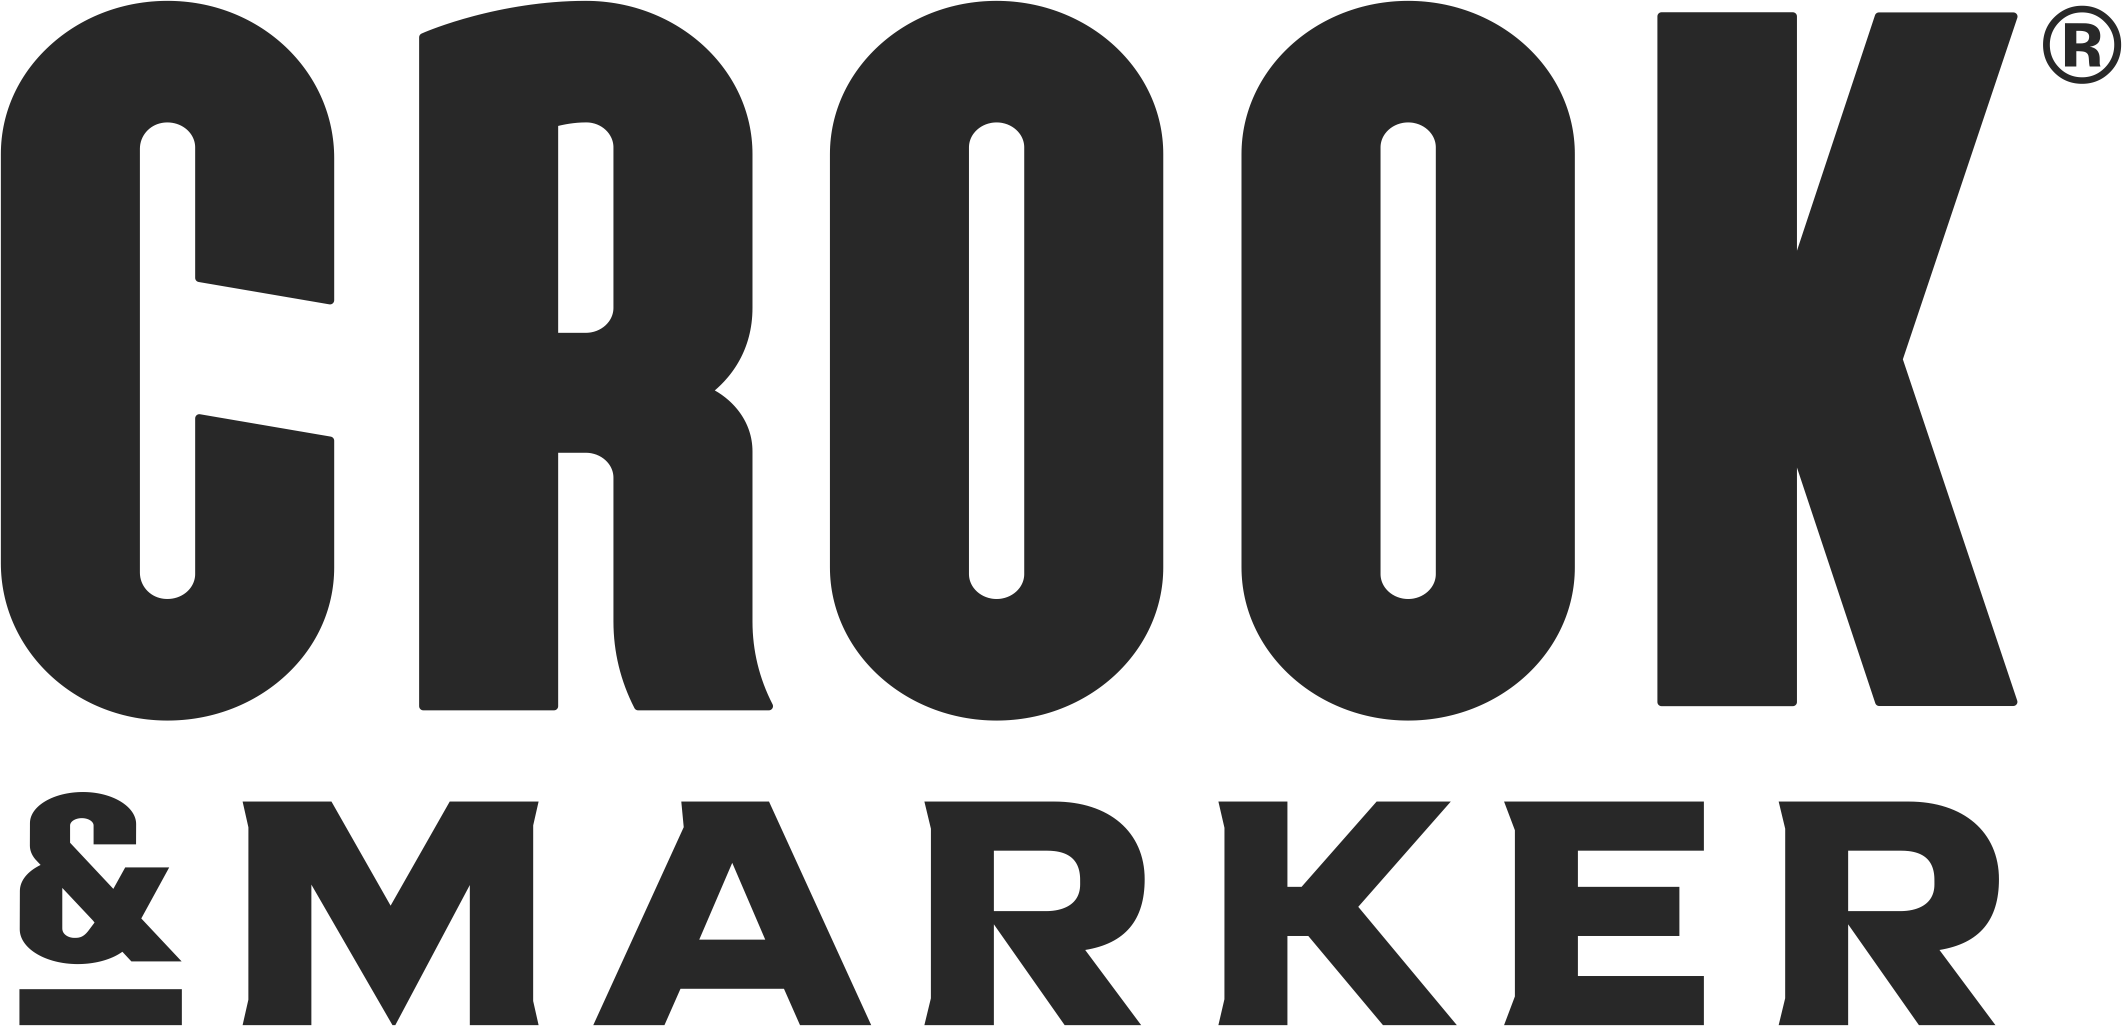 Crook& Marker_Black.png